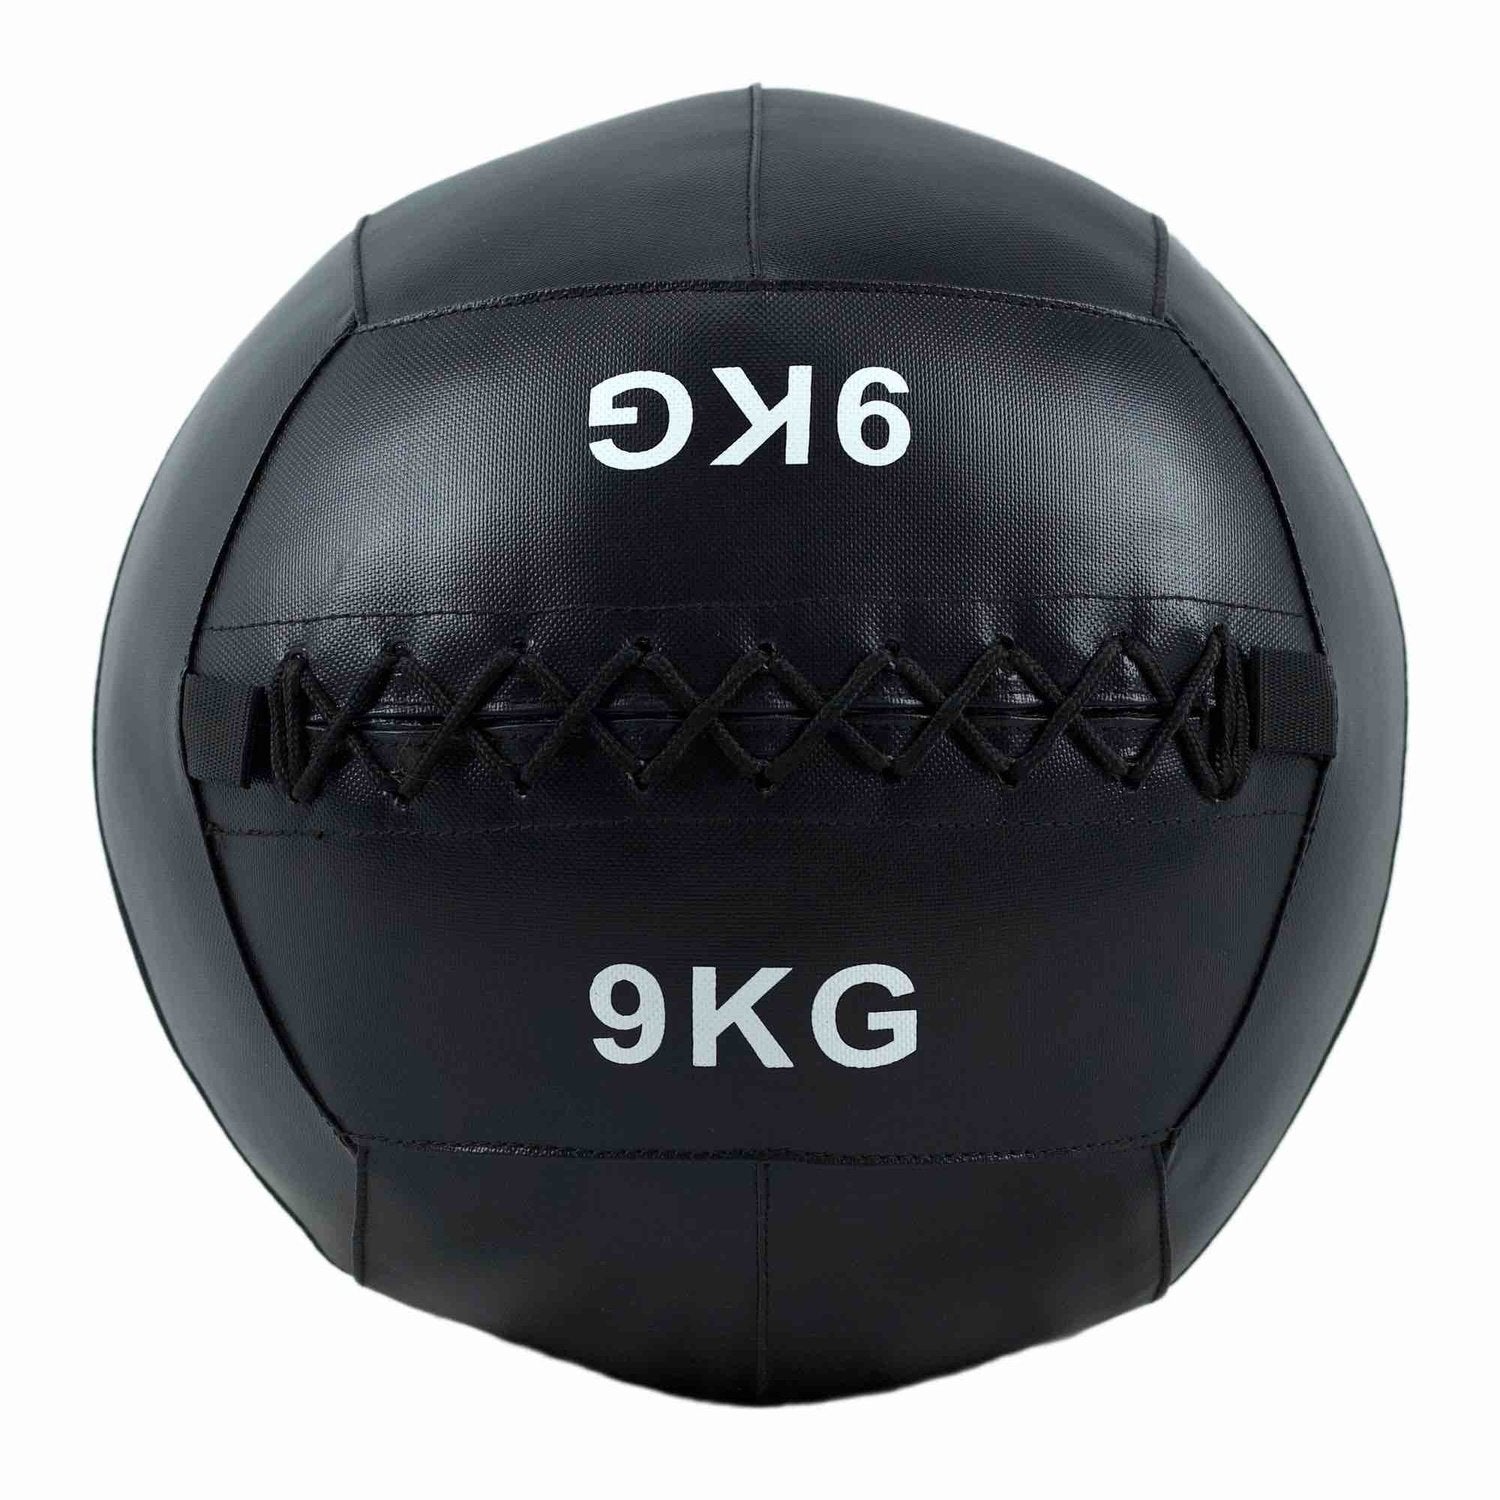 HighPowered Wallball (Medizinball) 9 kg kaufen bei HighPowered.ch